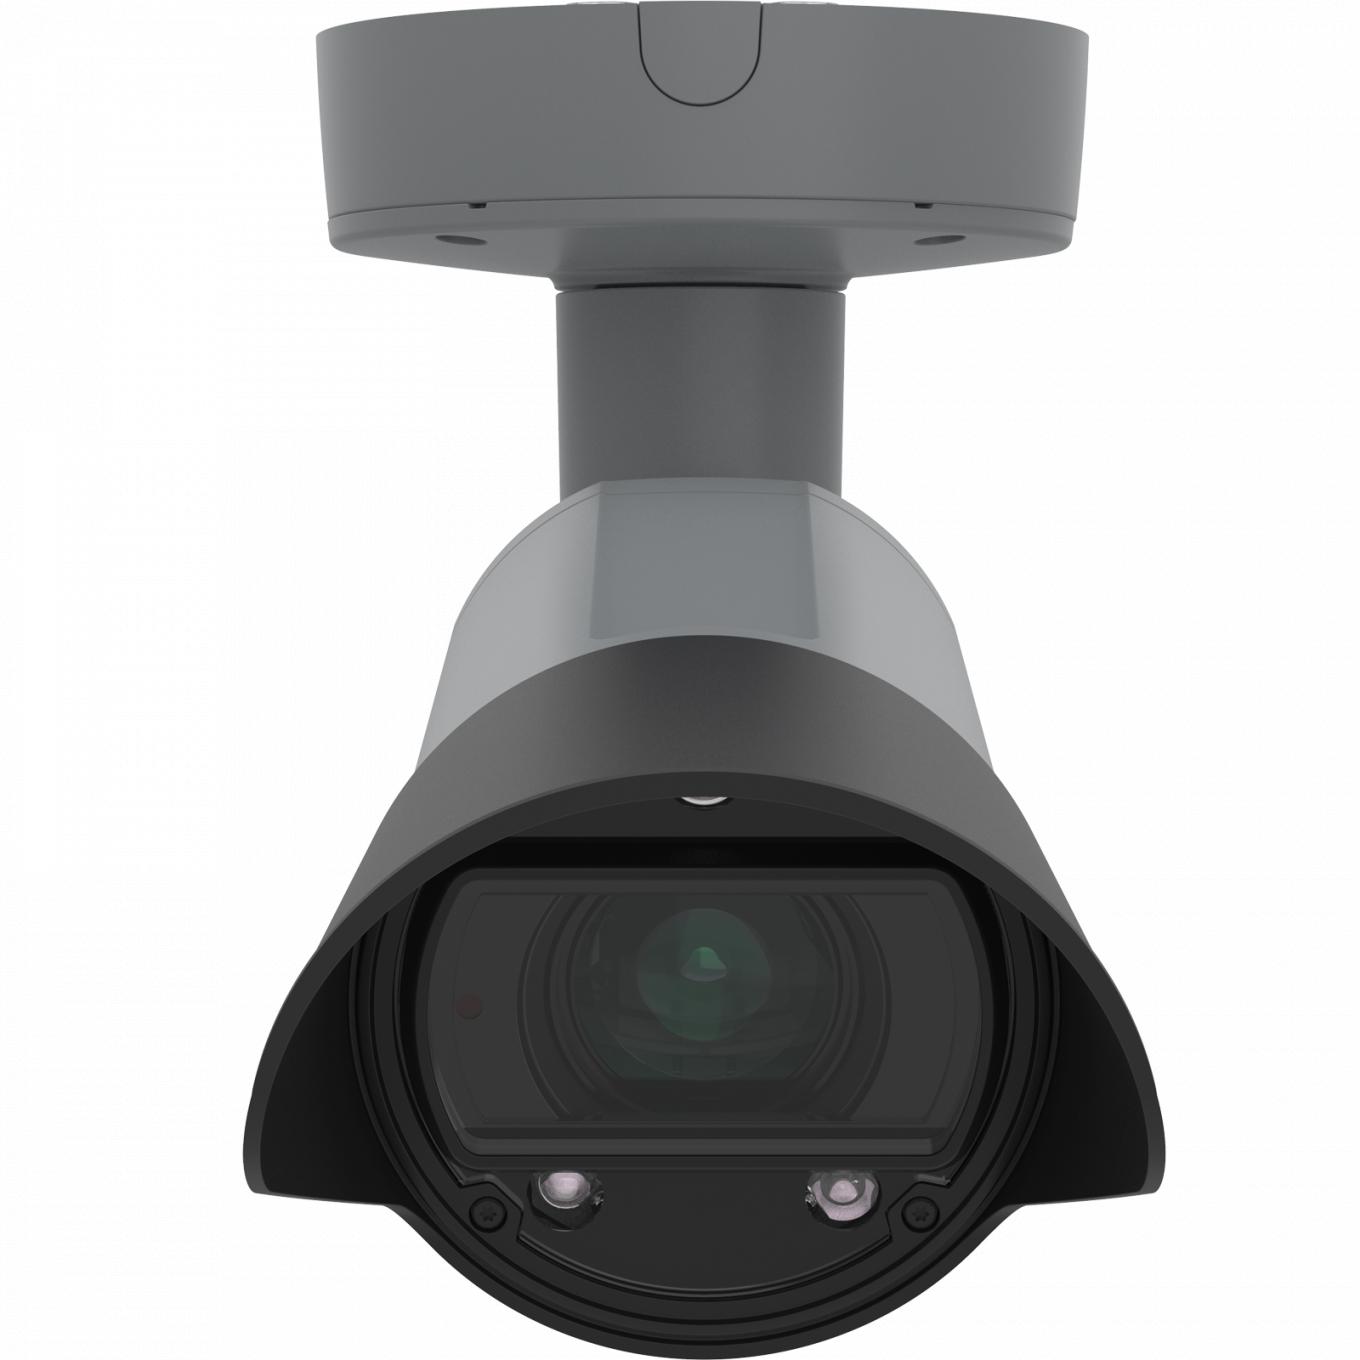 AXIS Q1700-LE License Plate Camera, zamontowana na suficie, widok z przodu.